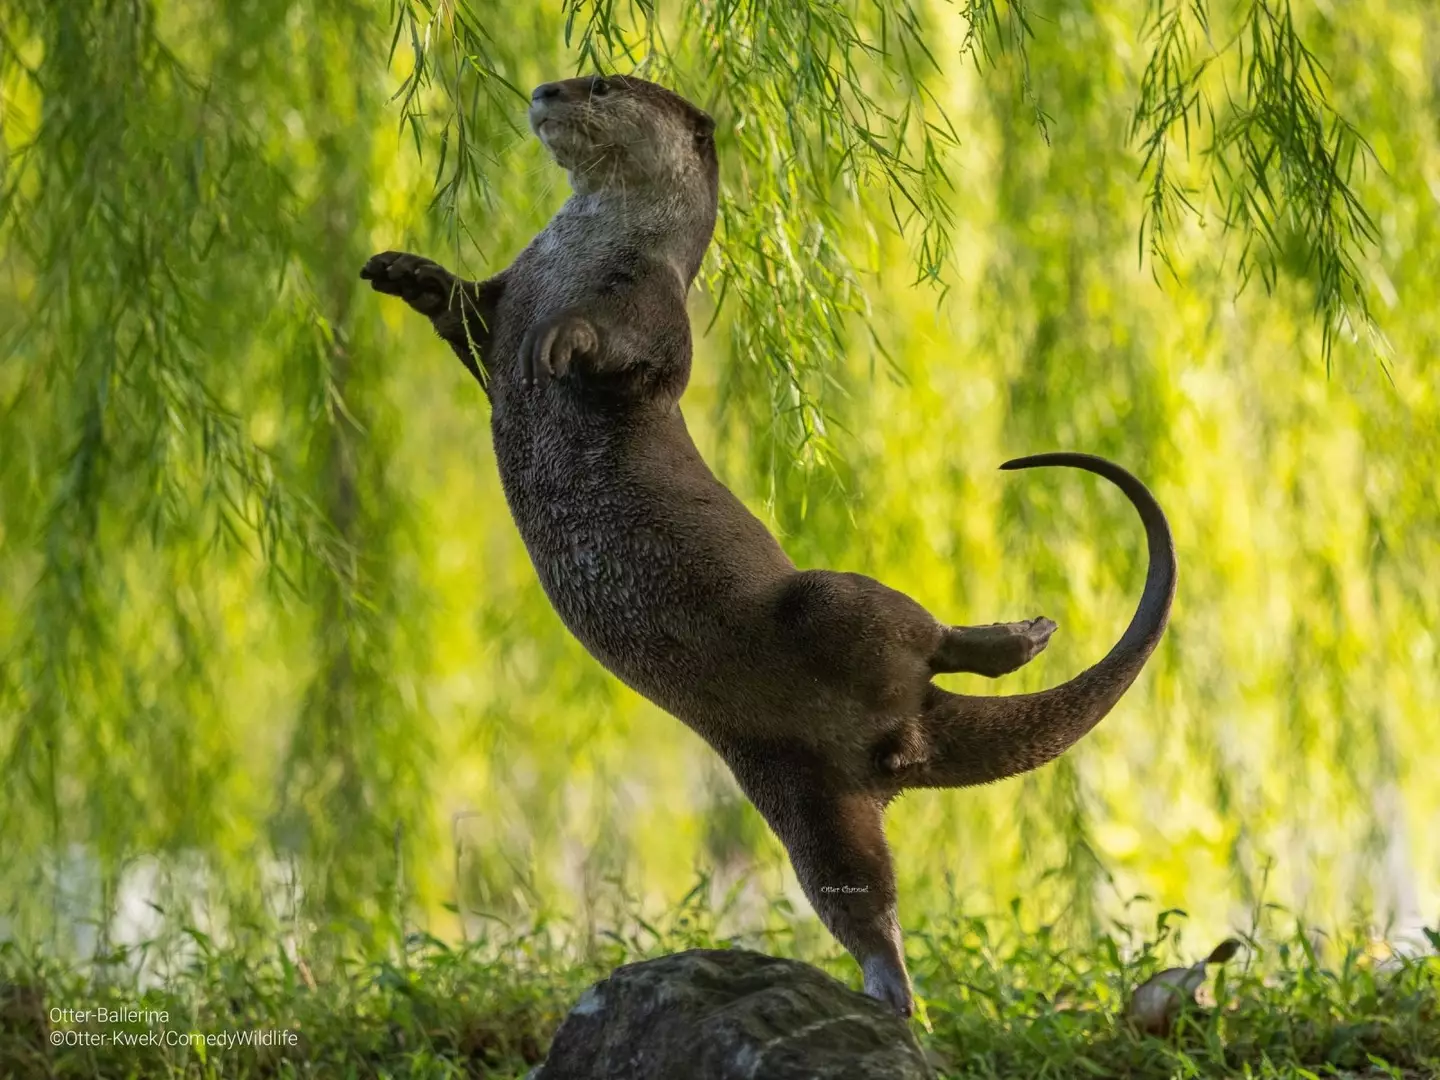 An otter dancing.